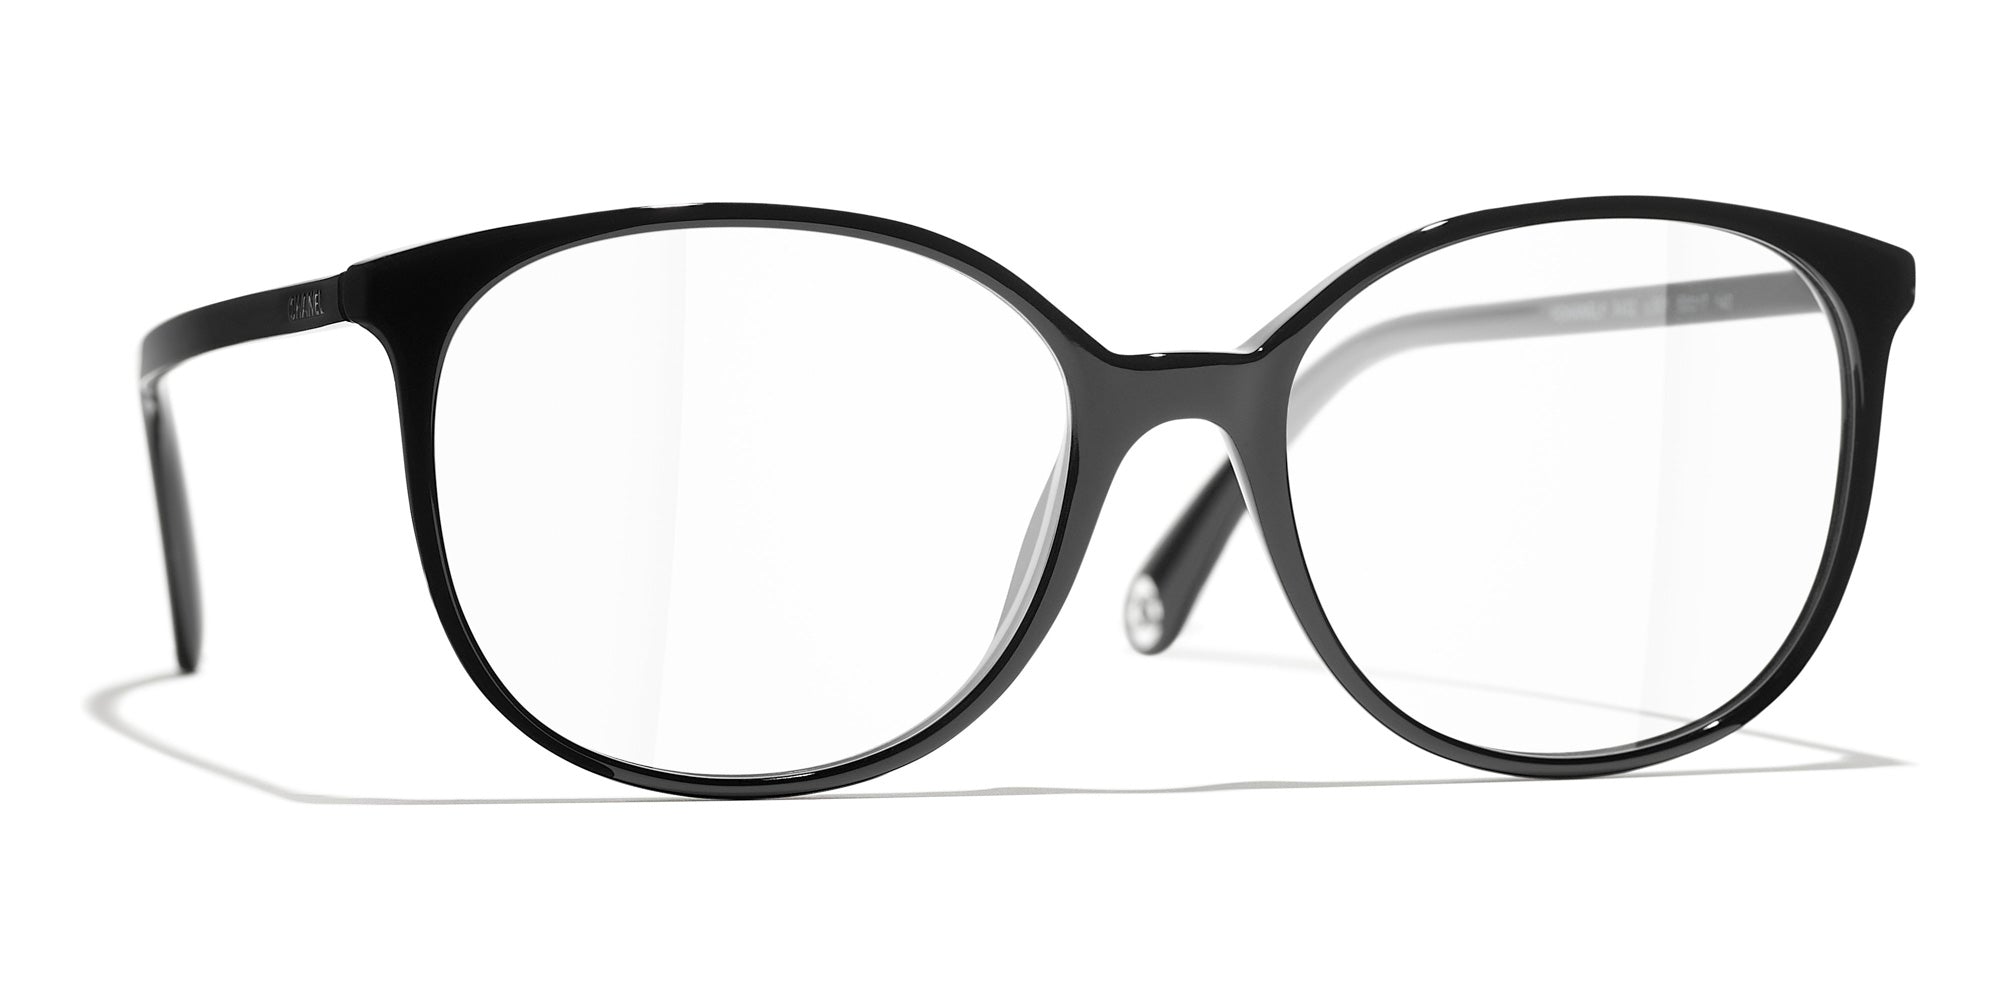 Panto Round Acetate Glasses for Women Strong Plastic Eyeglasses Frame  Tortoise